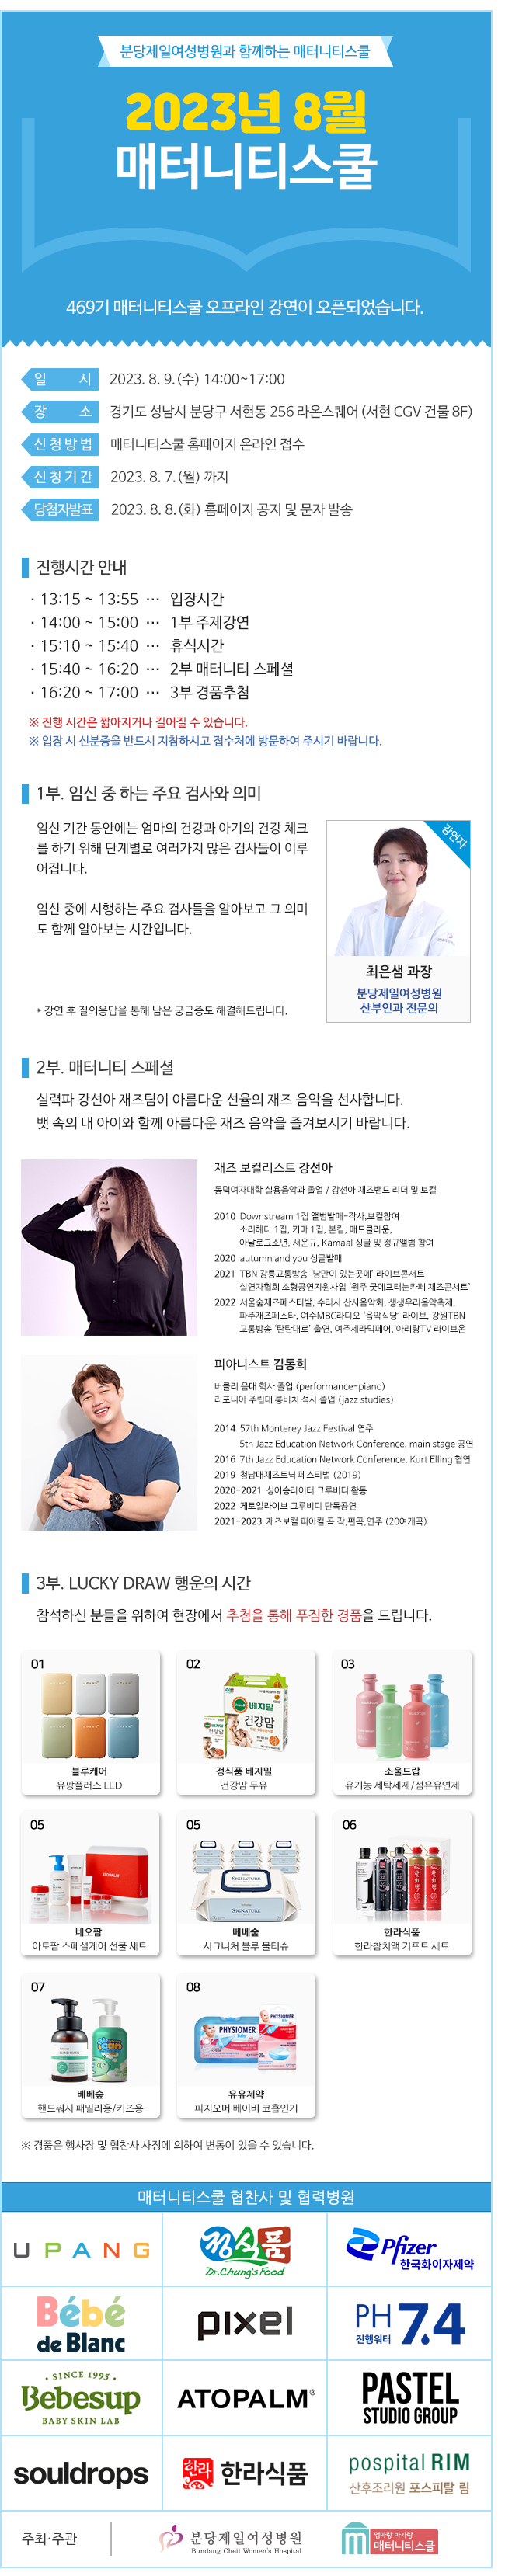 2023년 8월_오프라인 강연 안내 신청페이지(2차).png